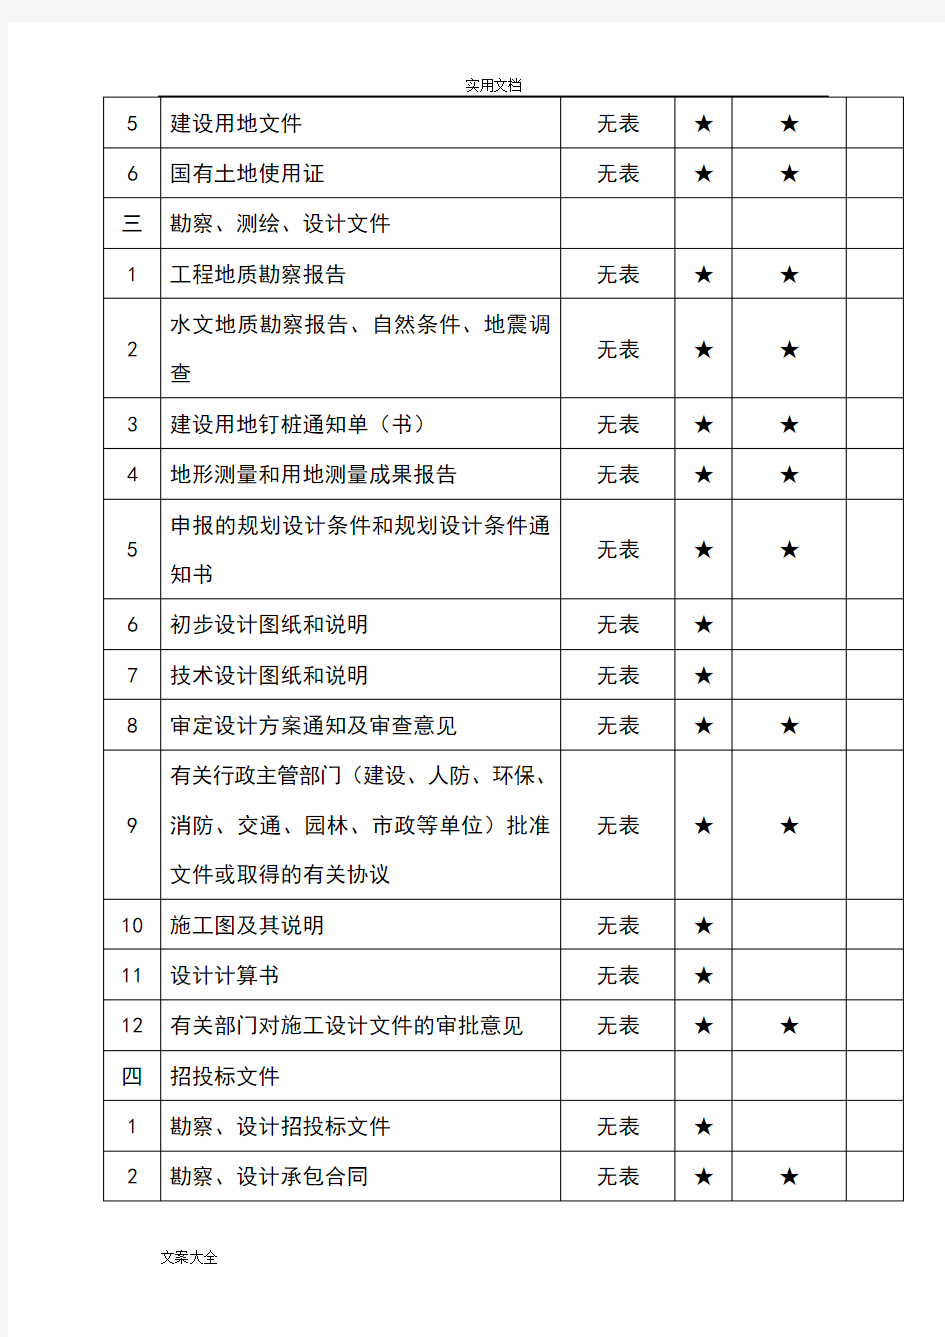 重庆市建设工程文件资料归档内容一览表